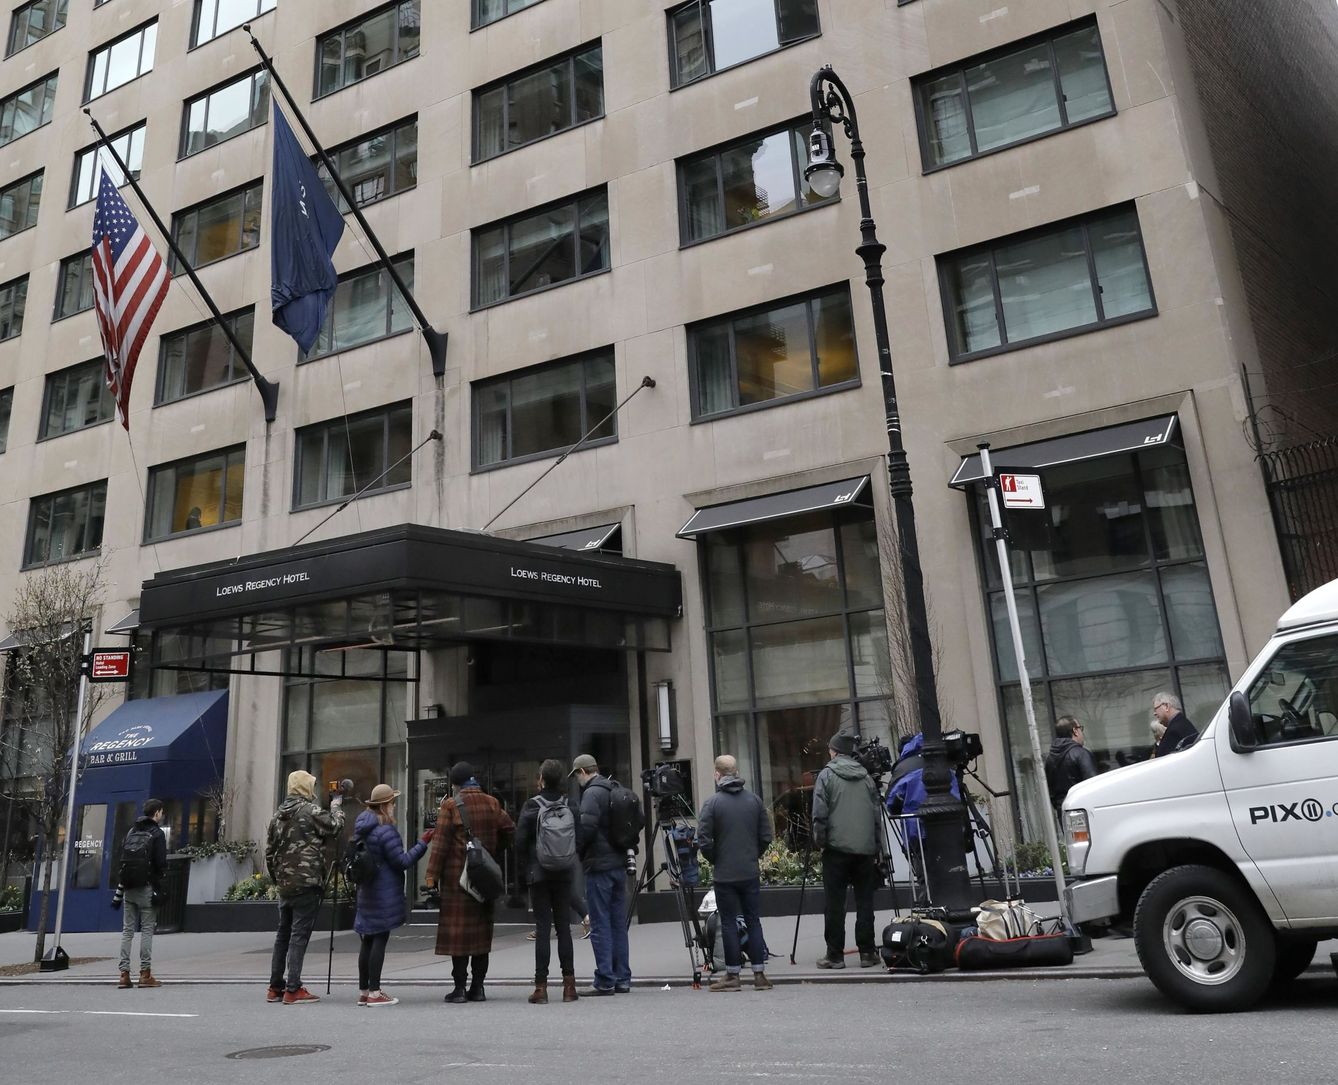 Reporteros esperan frente al Loews Regency Hotel, la residencia de Michael Cohen, en Nueva York, tras la redada del FBI el lunes. (EFE)